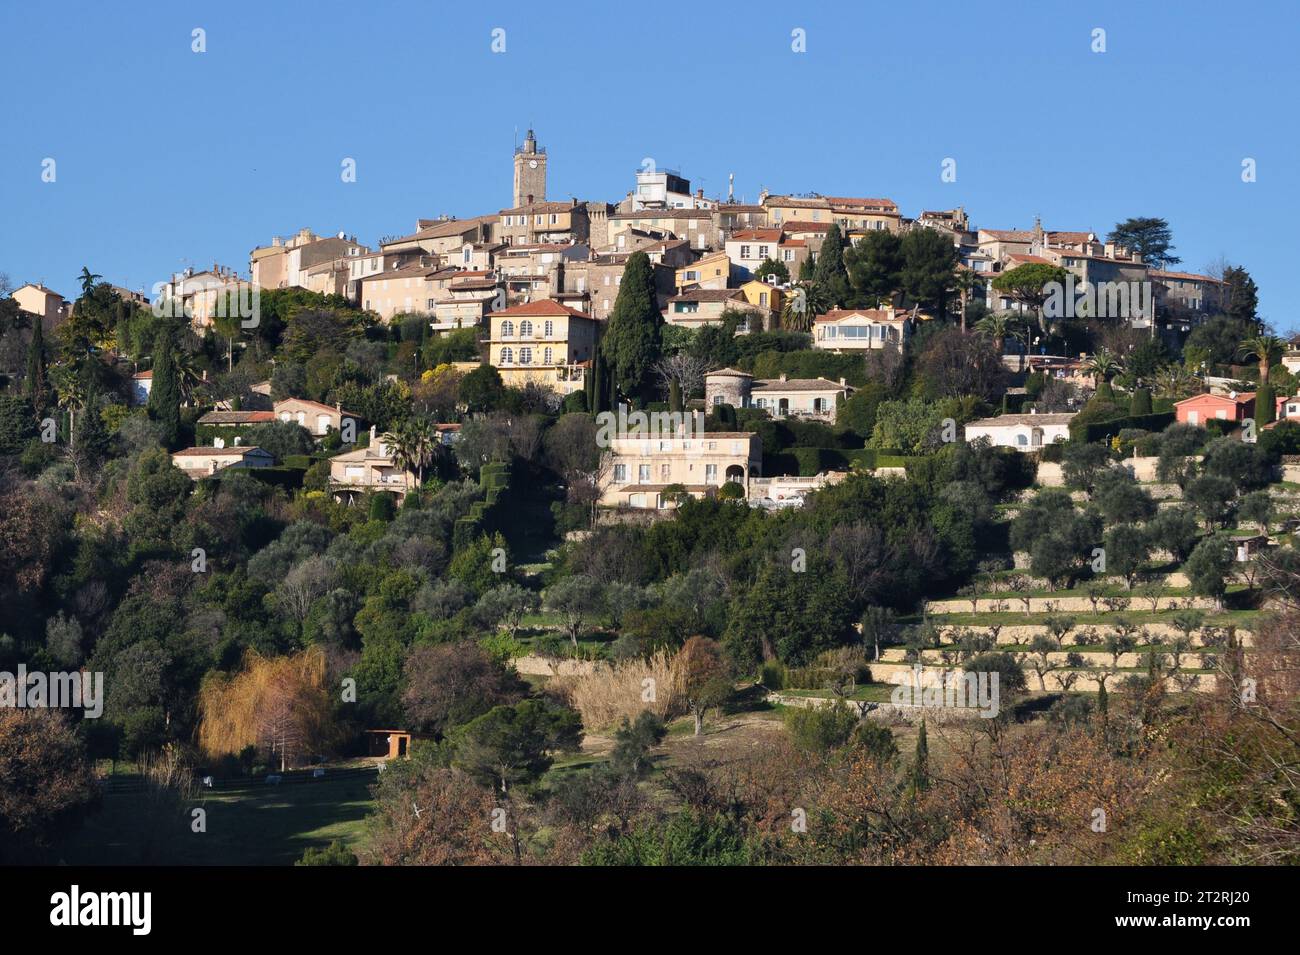 France, côte d'azur, Mougins, ce magnifique village médiéval se dresse entre oliviers et pins. Pablo Picasso y quitte 15 ans. Banque D'Images